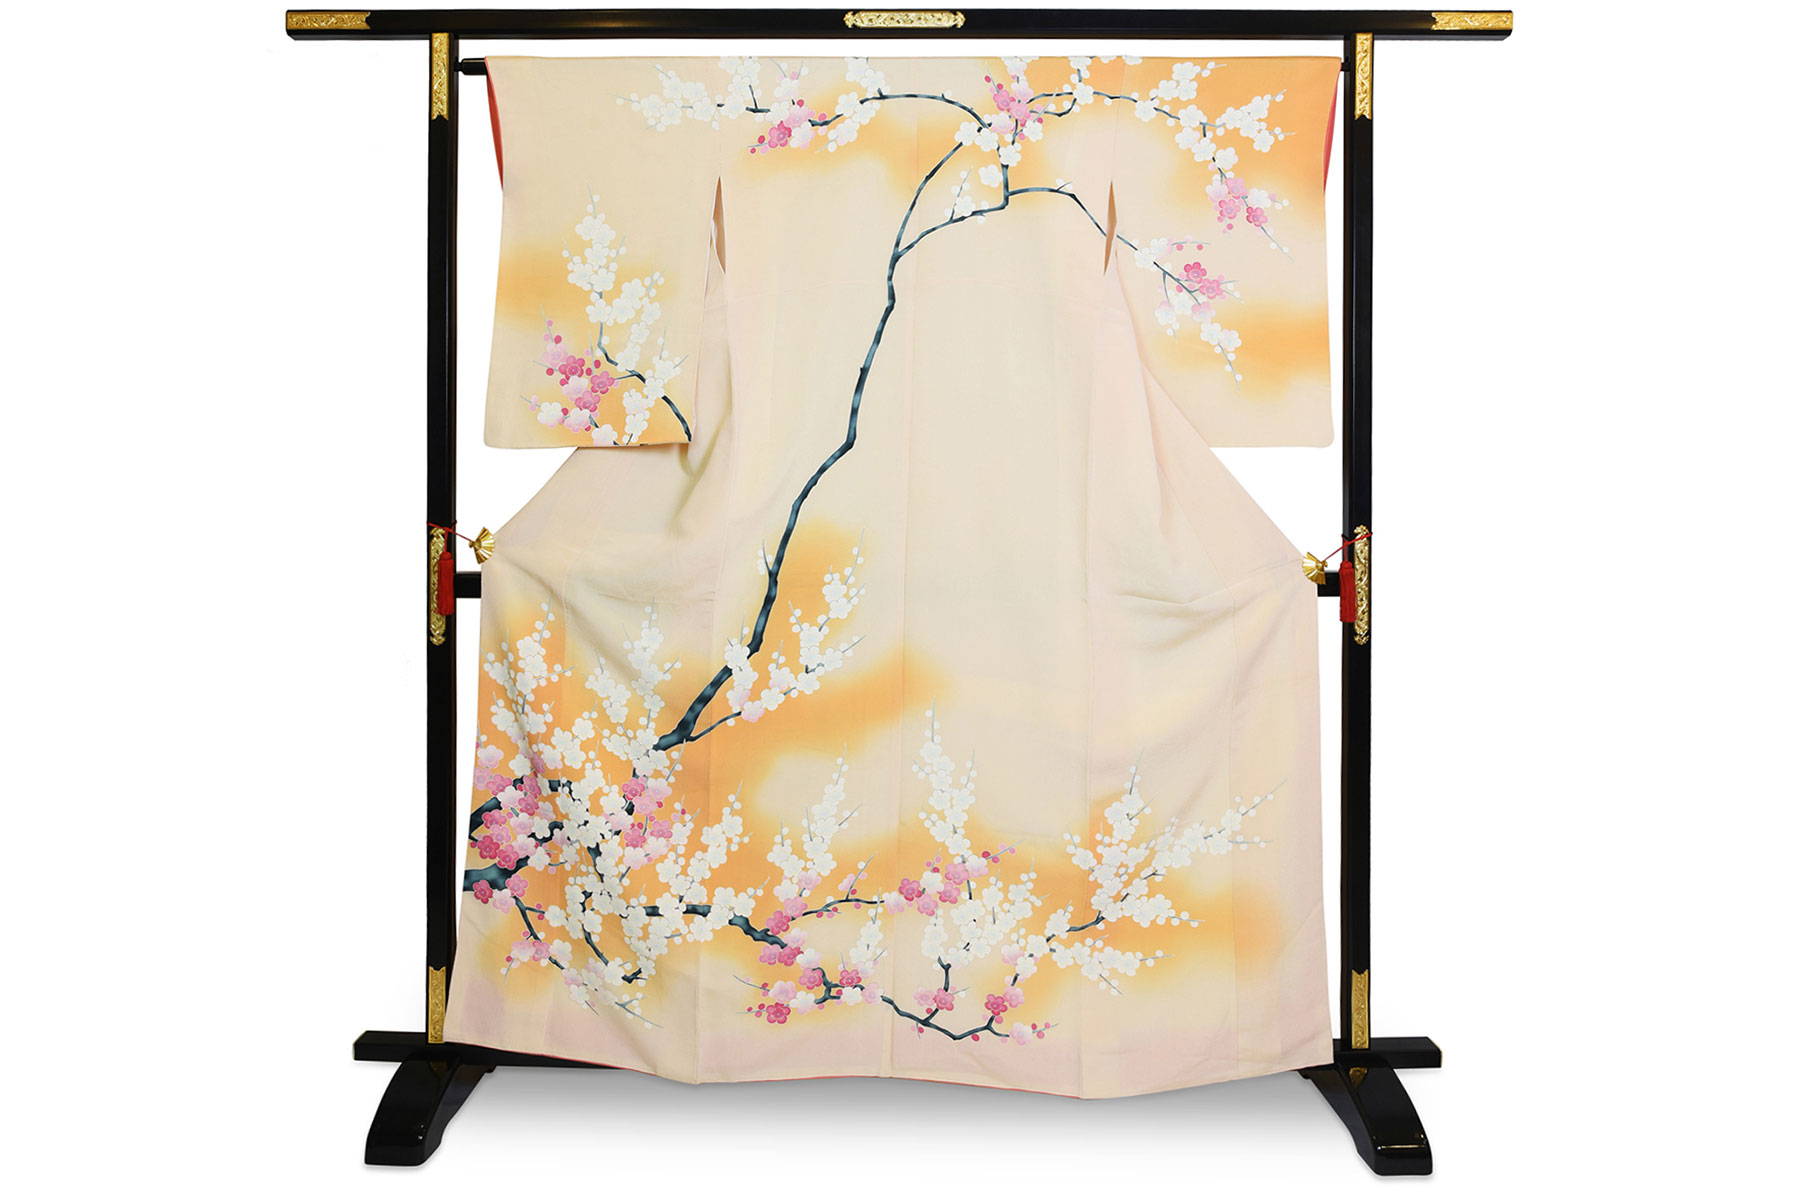 kimono truyền thống - kimono lụa mận cổ điển, Nhật Bản